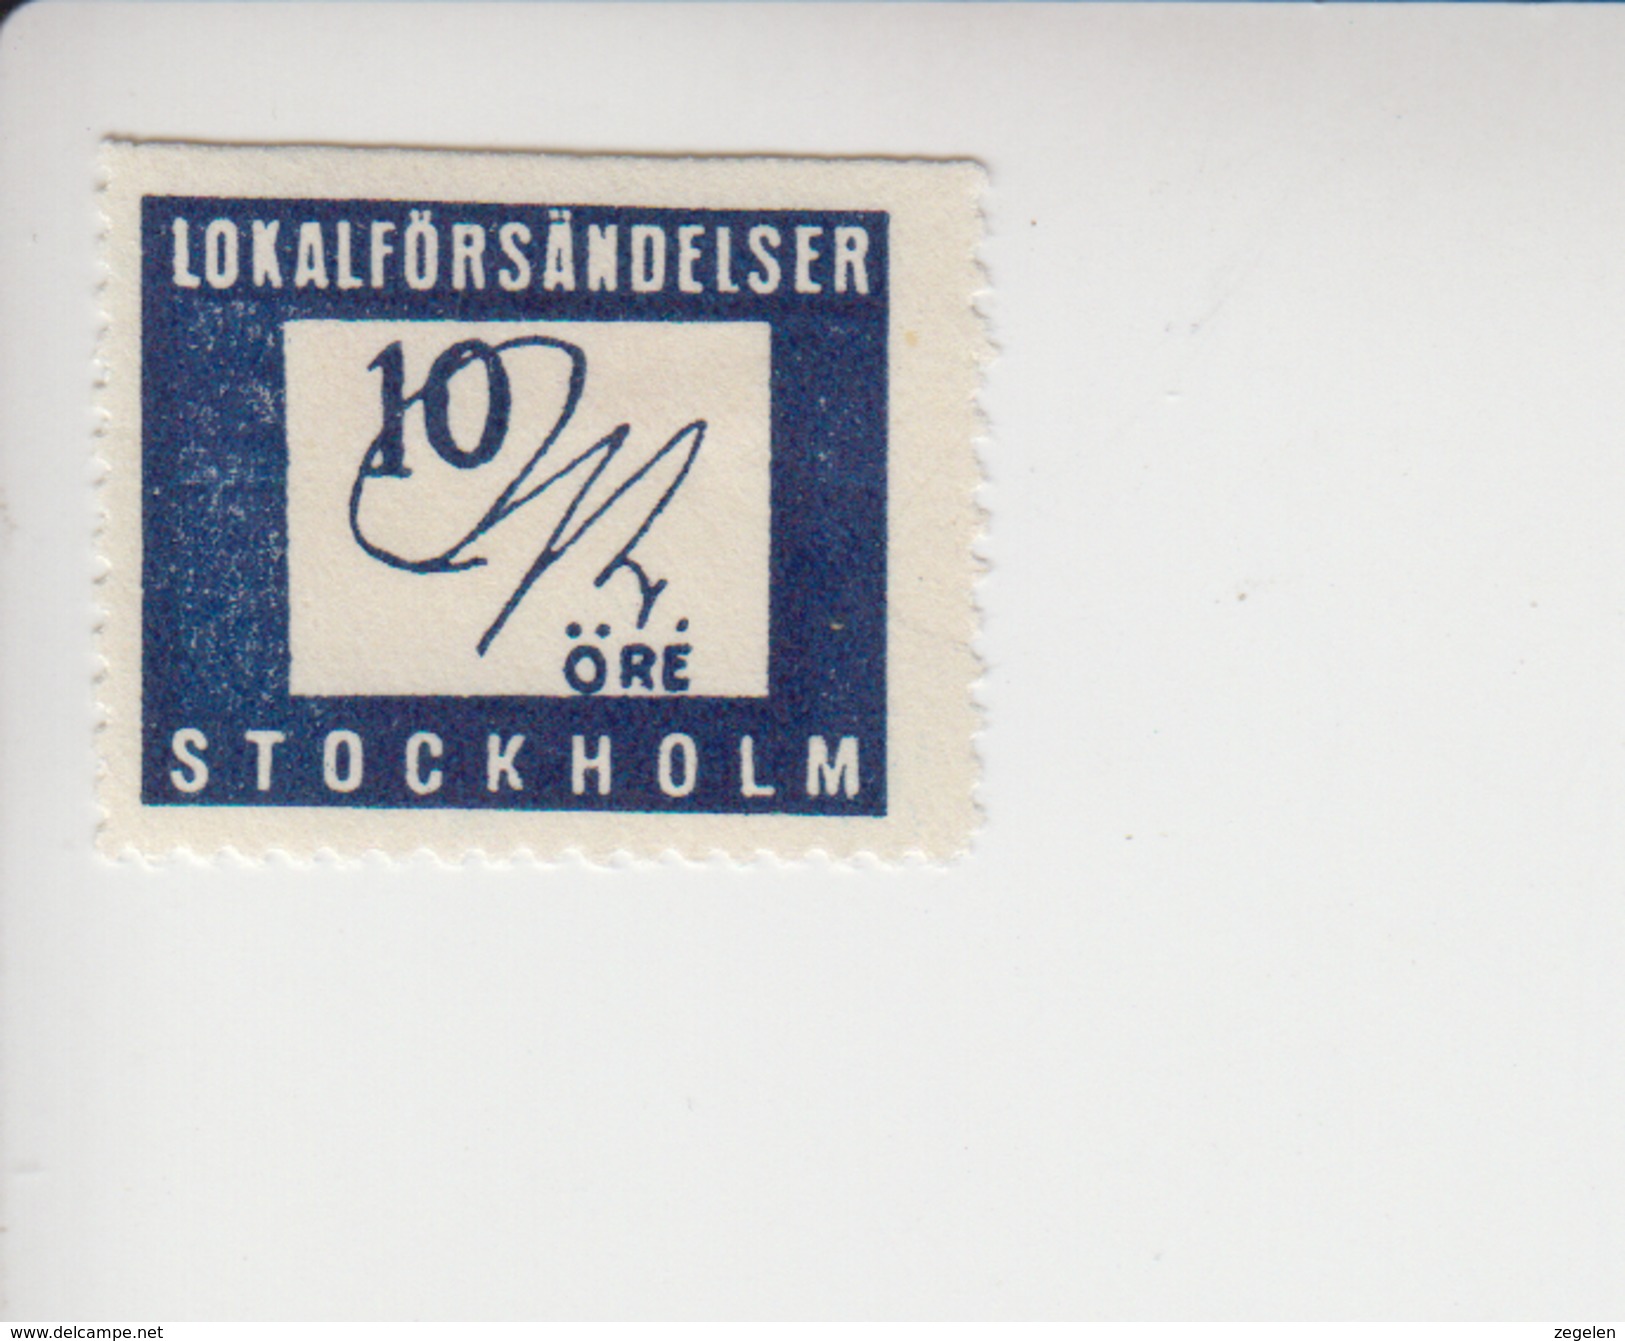 Zweden Lokale Post Facit-cataloog Stockholm Lokalförsändelser 1B * Boven Ongetand - Local Post Stamps